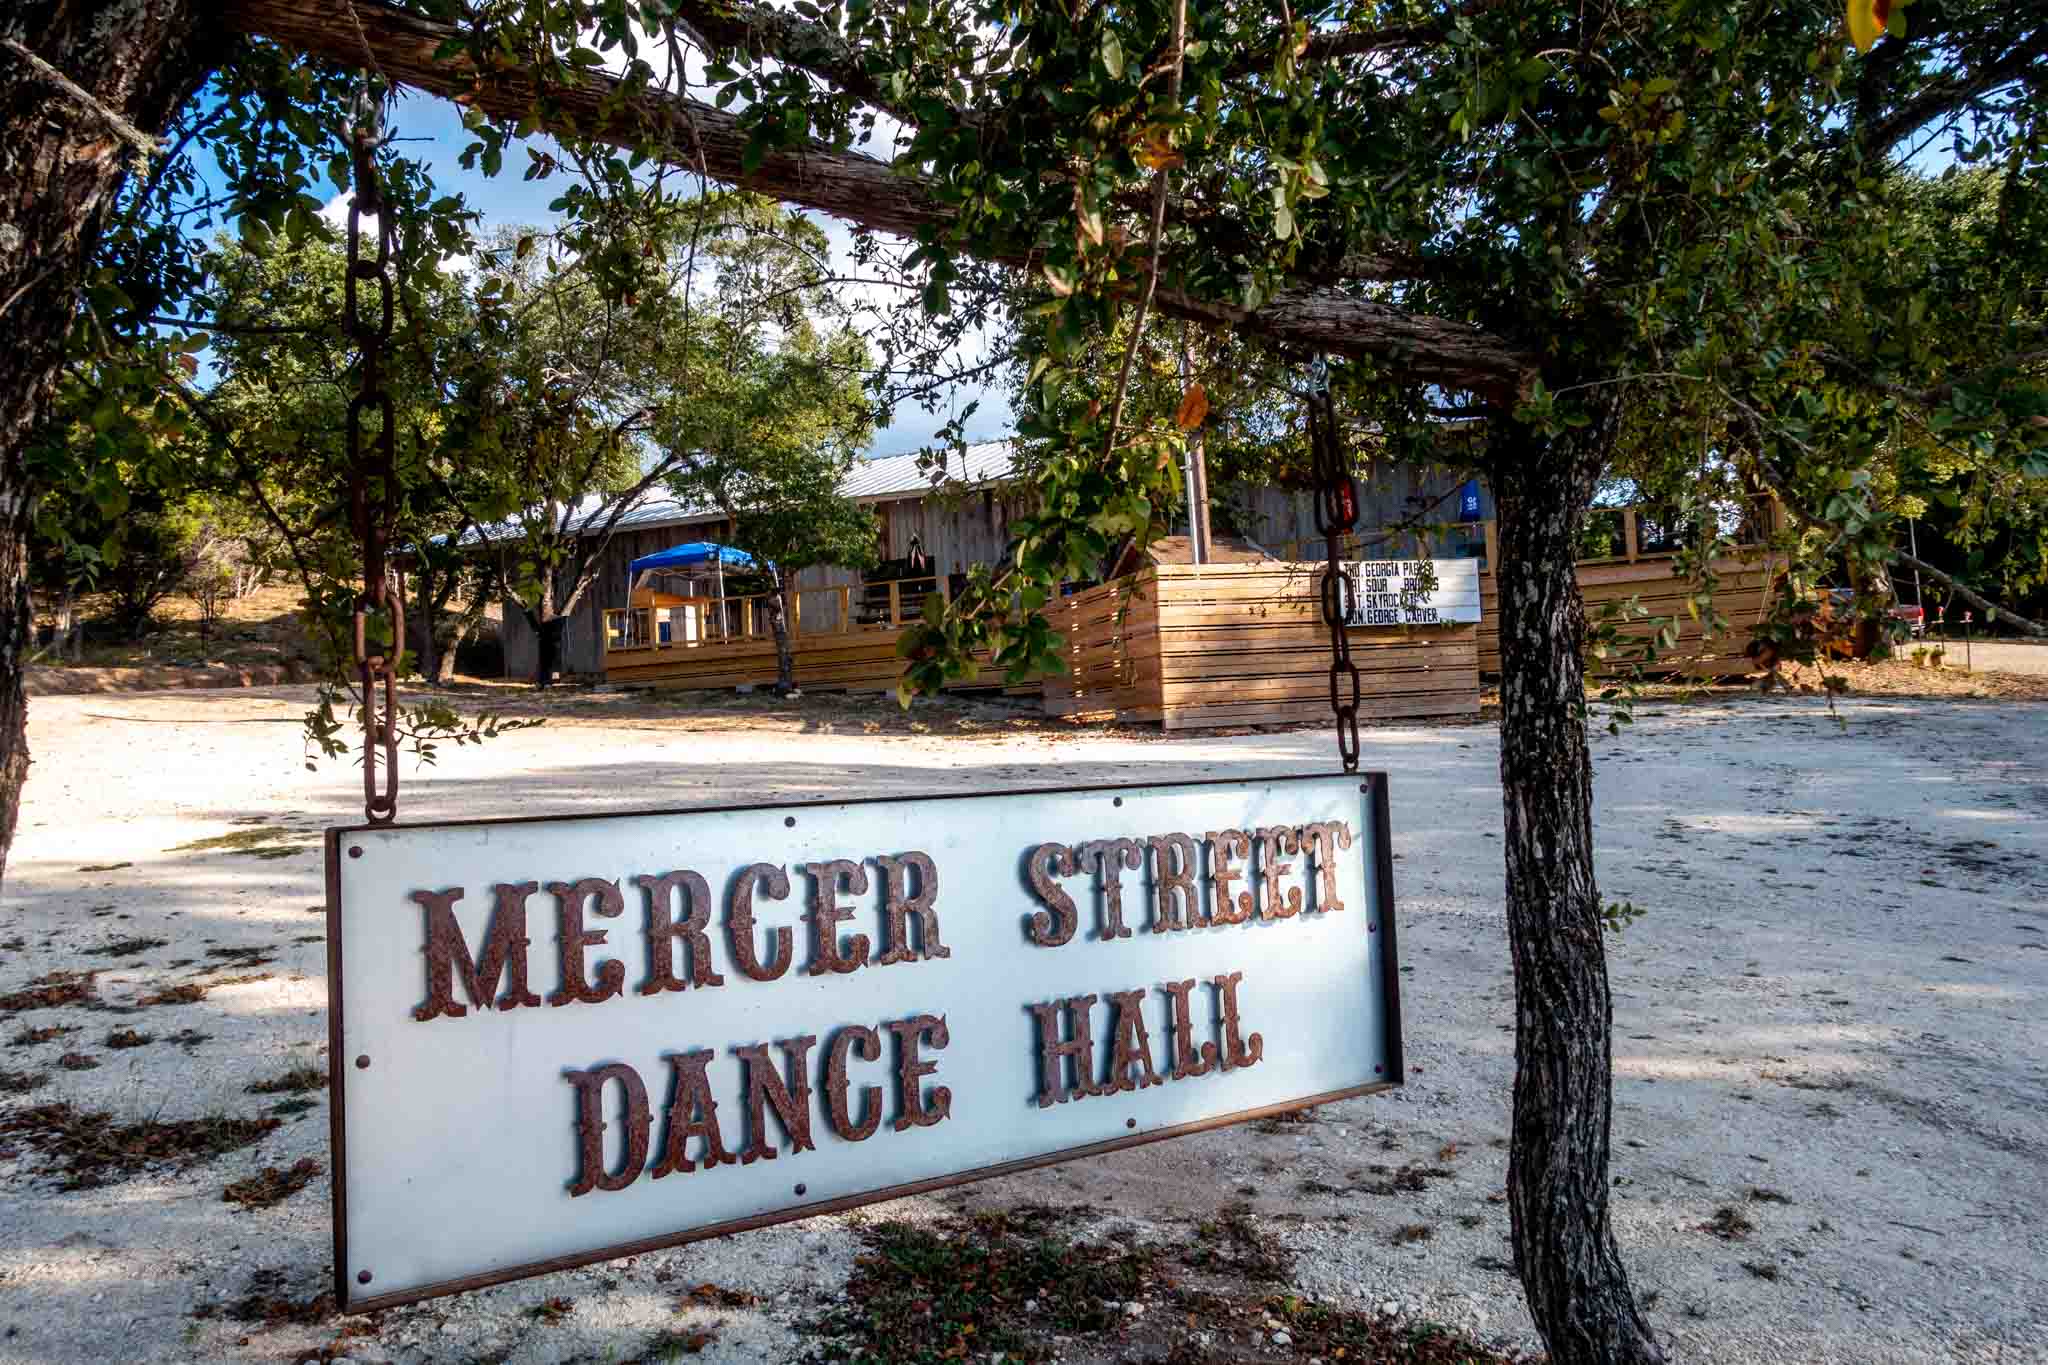 Mercer Street Dance Hall sign.